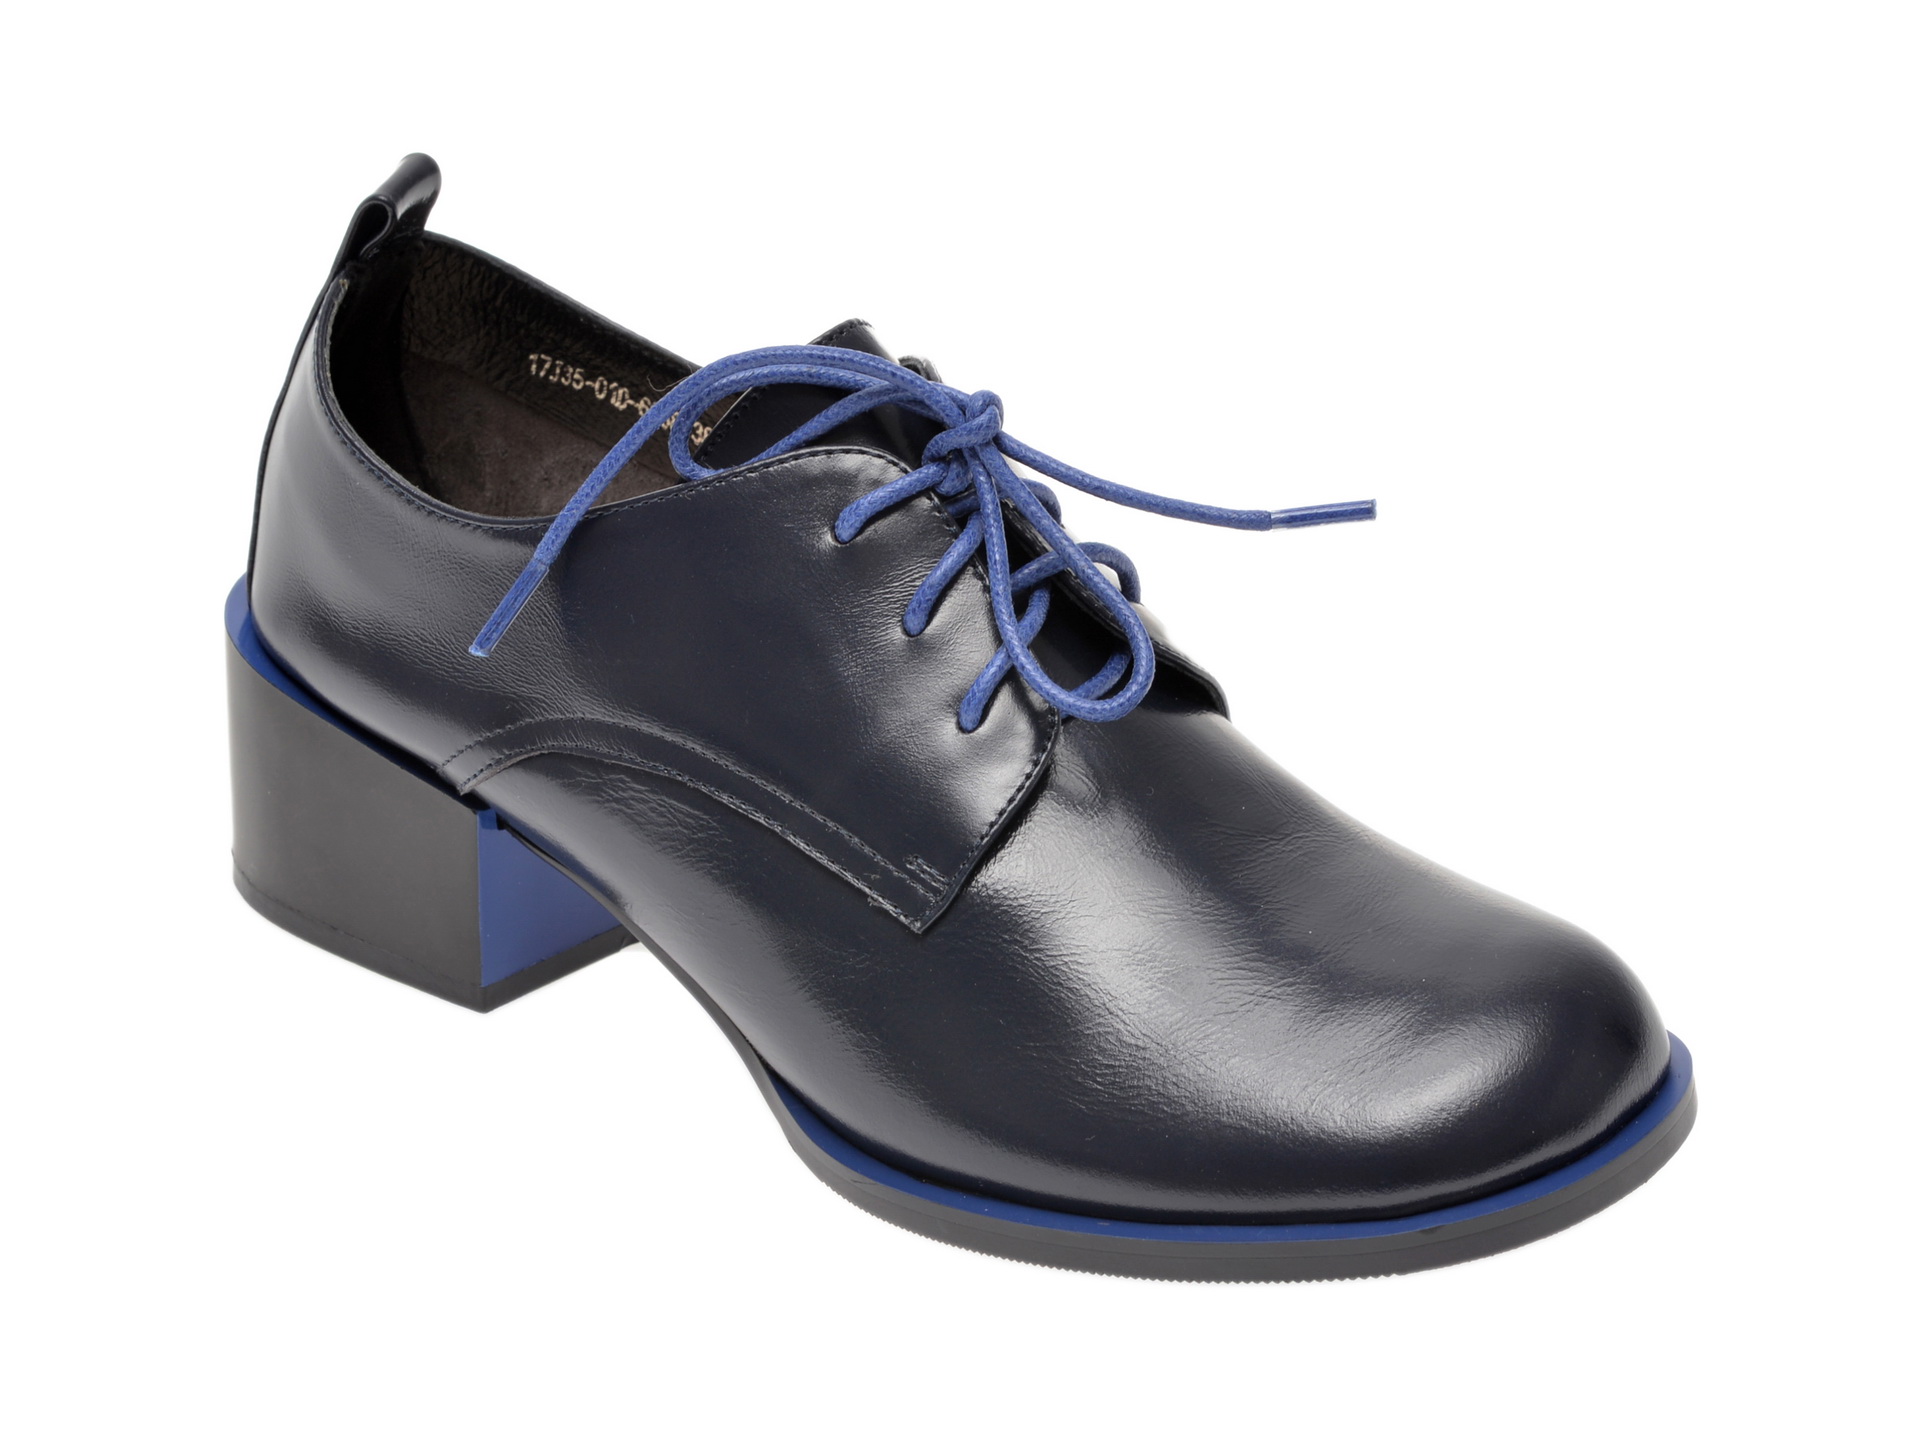 Pantofi EPICA bleumarin, 17J3501, din piele naturala